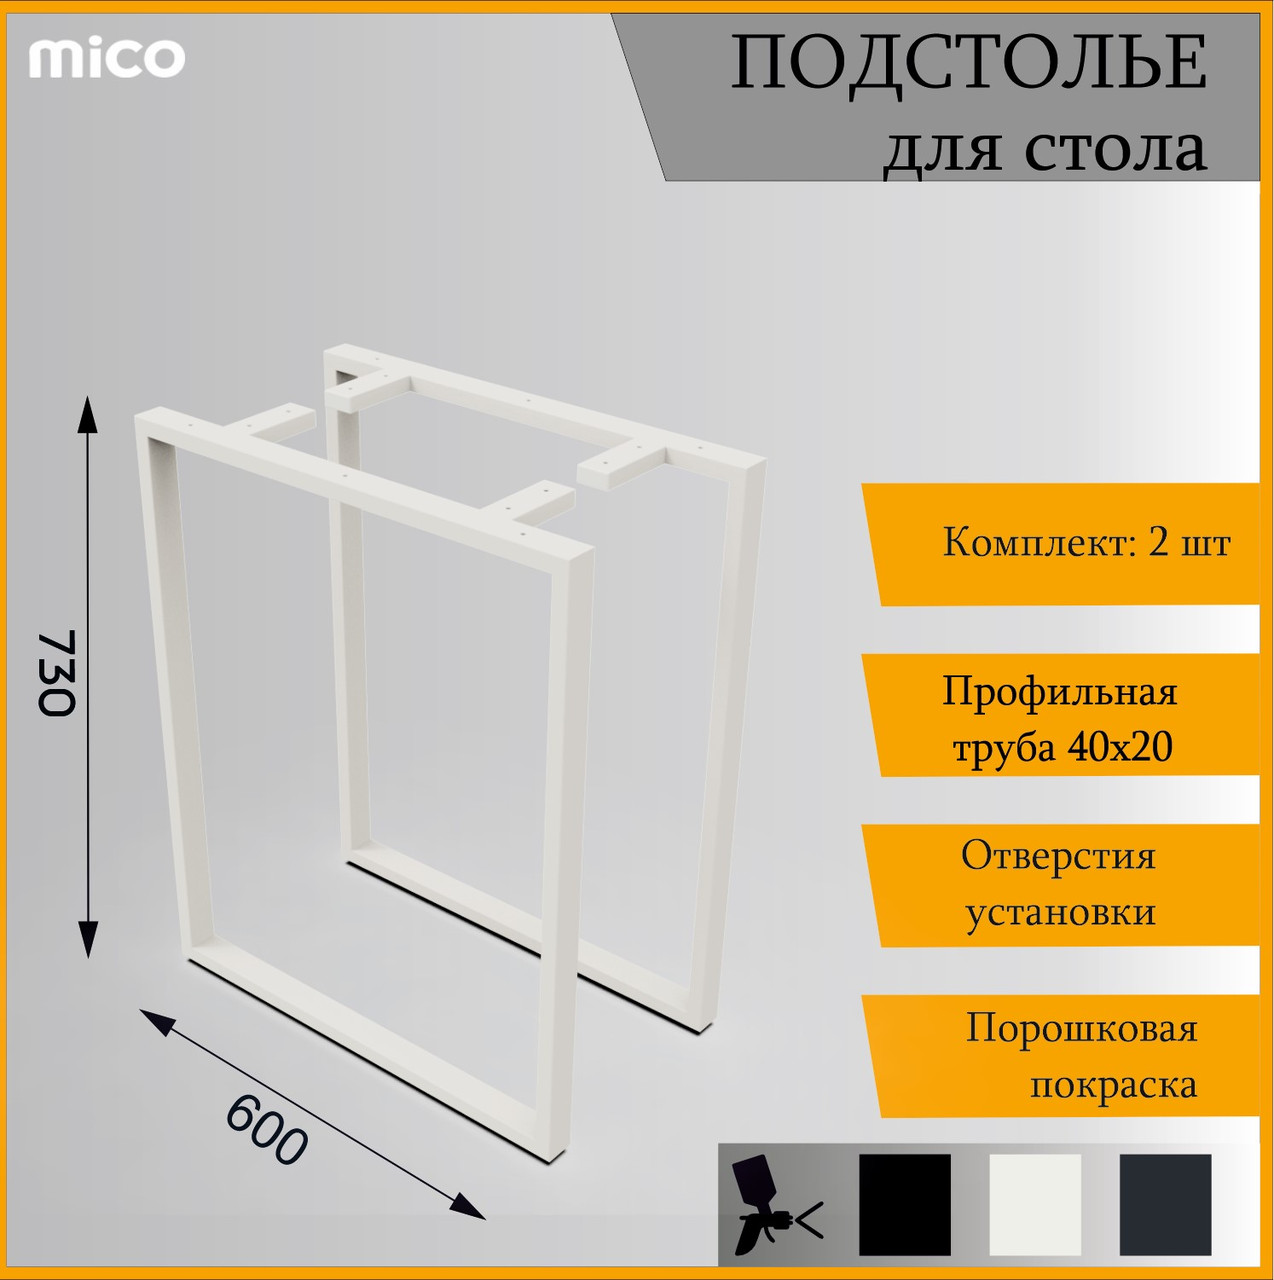 Подстолье для столa Квадрат Белый Лофт 600x730 / 40x20 Премиум матовый / муар | Mico